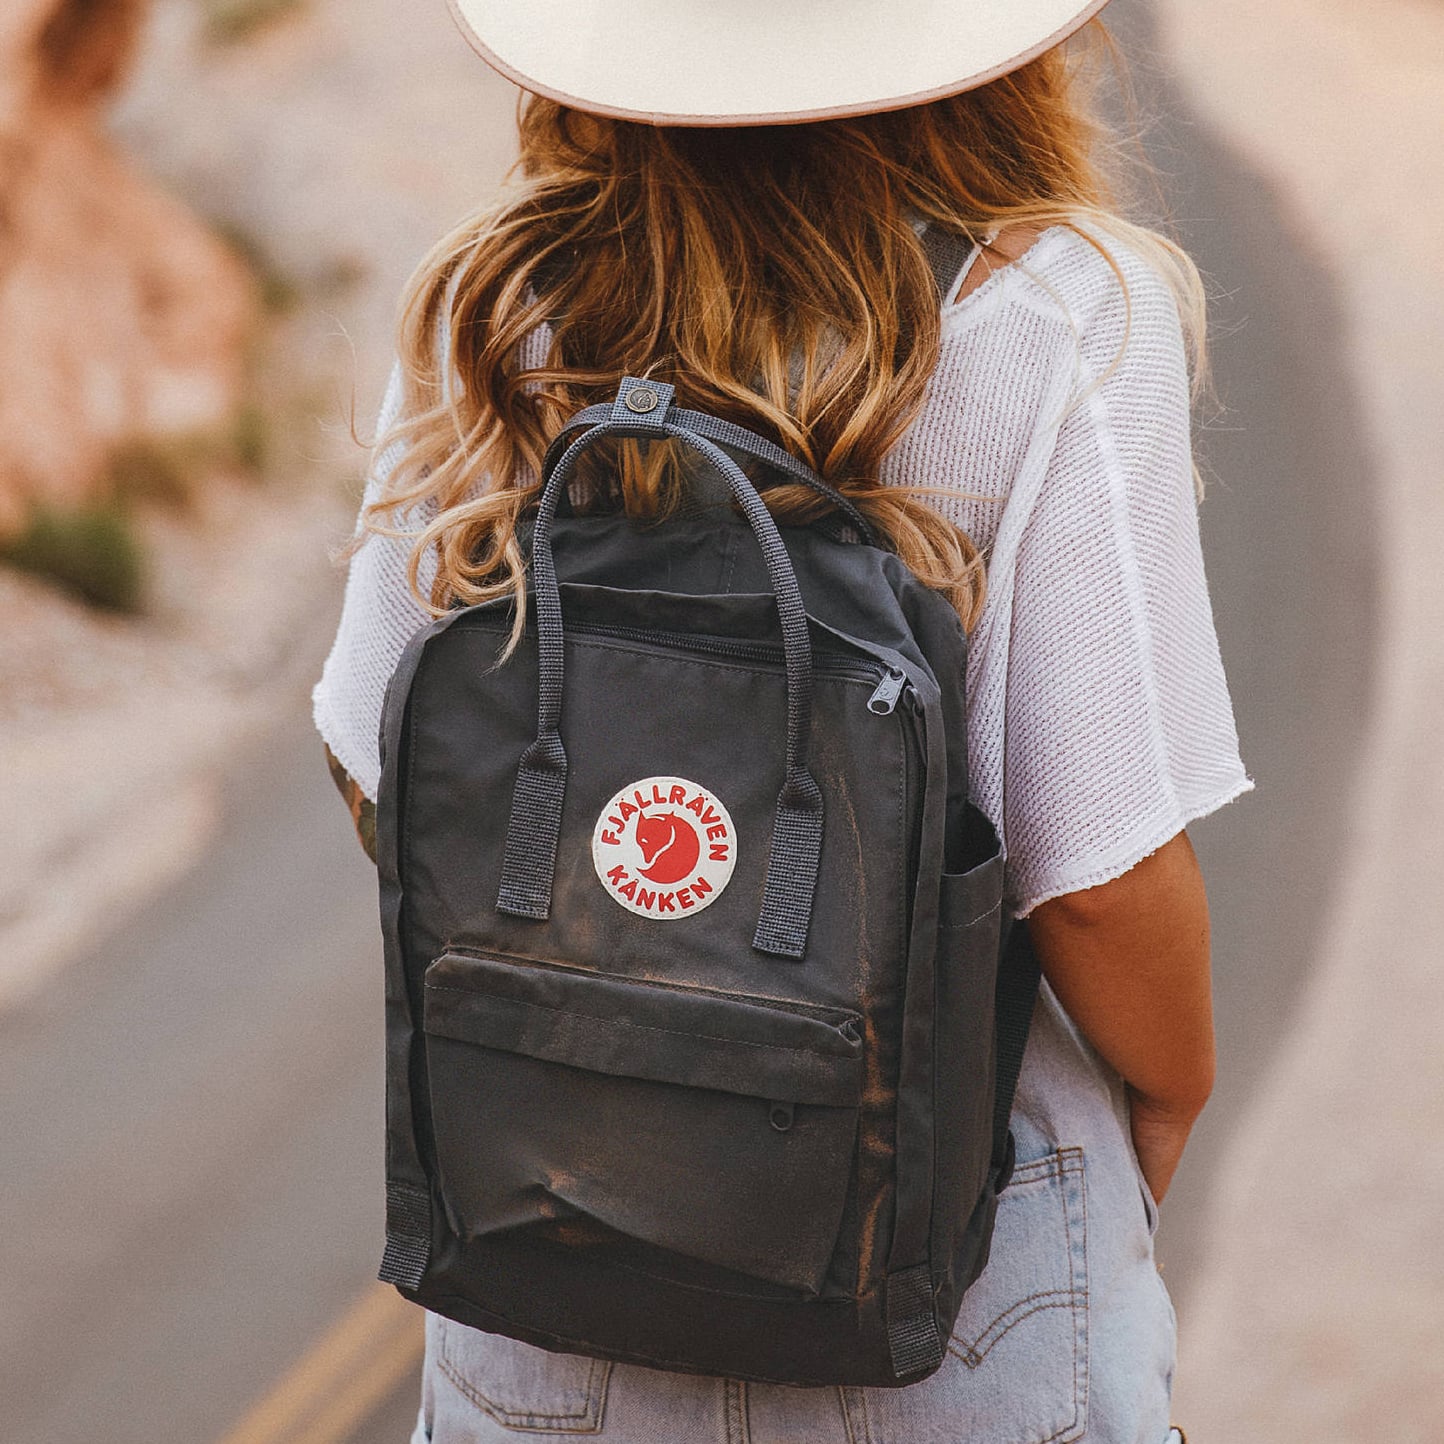 Best Travel Backpacks For Women